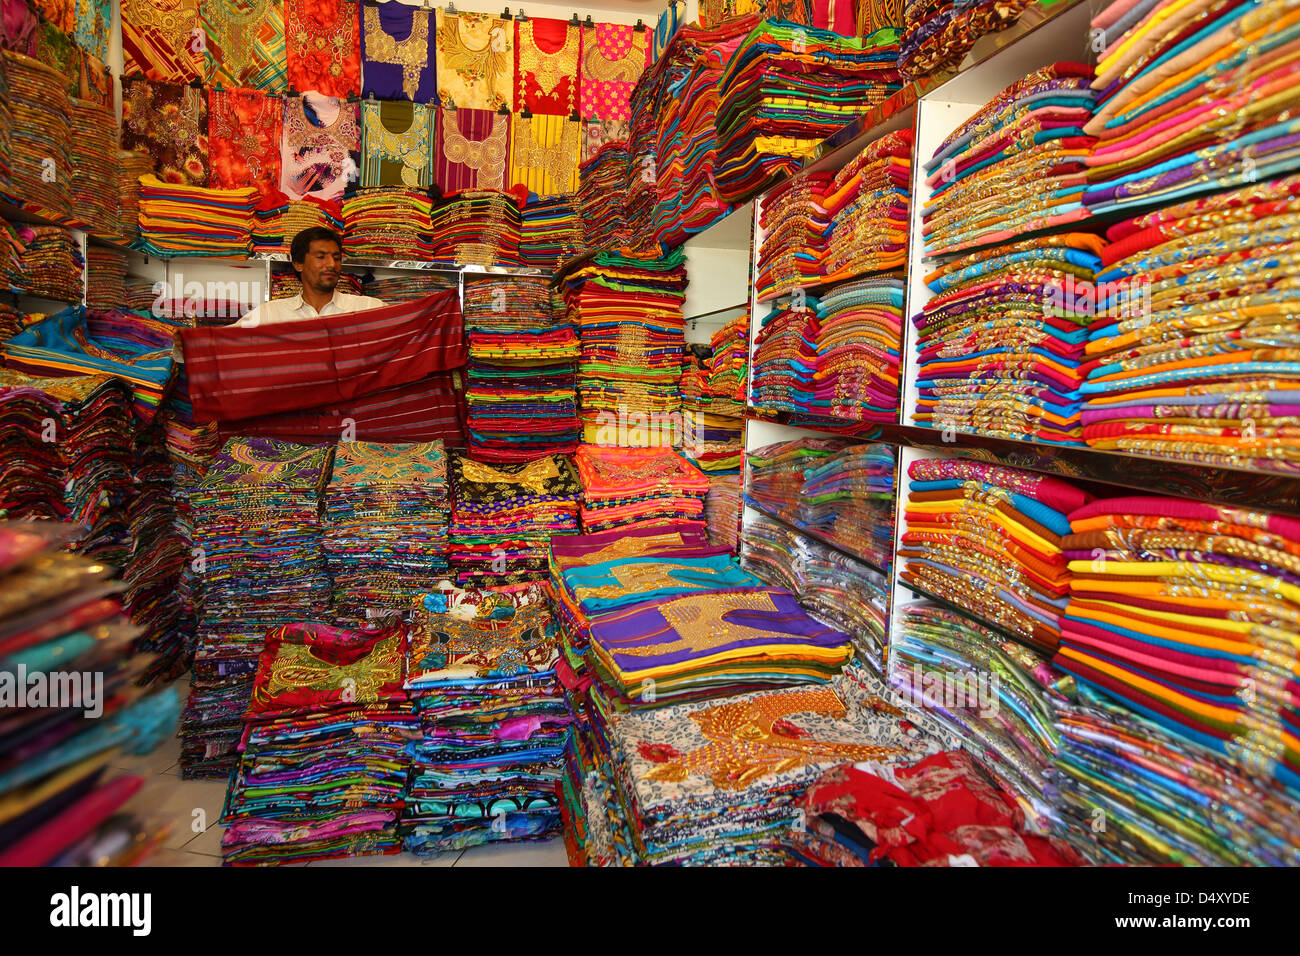 Der Mensch Falten Stoff im Textilgeschäft, Dubai, Vereinigte Arabische Emirate Stockfoto